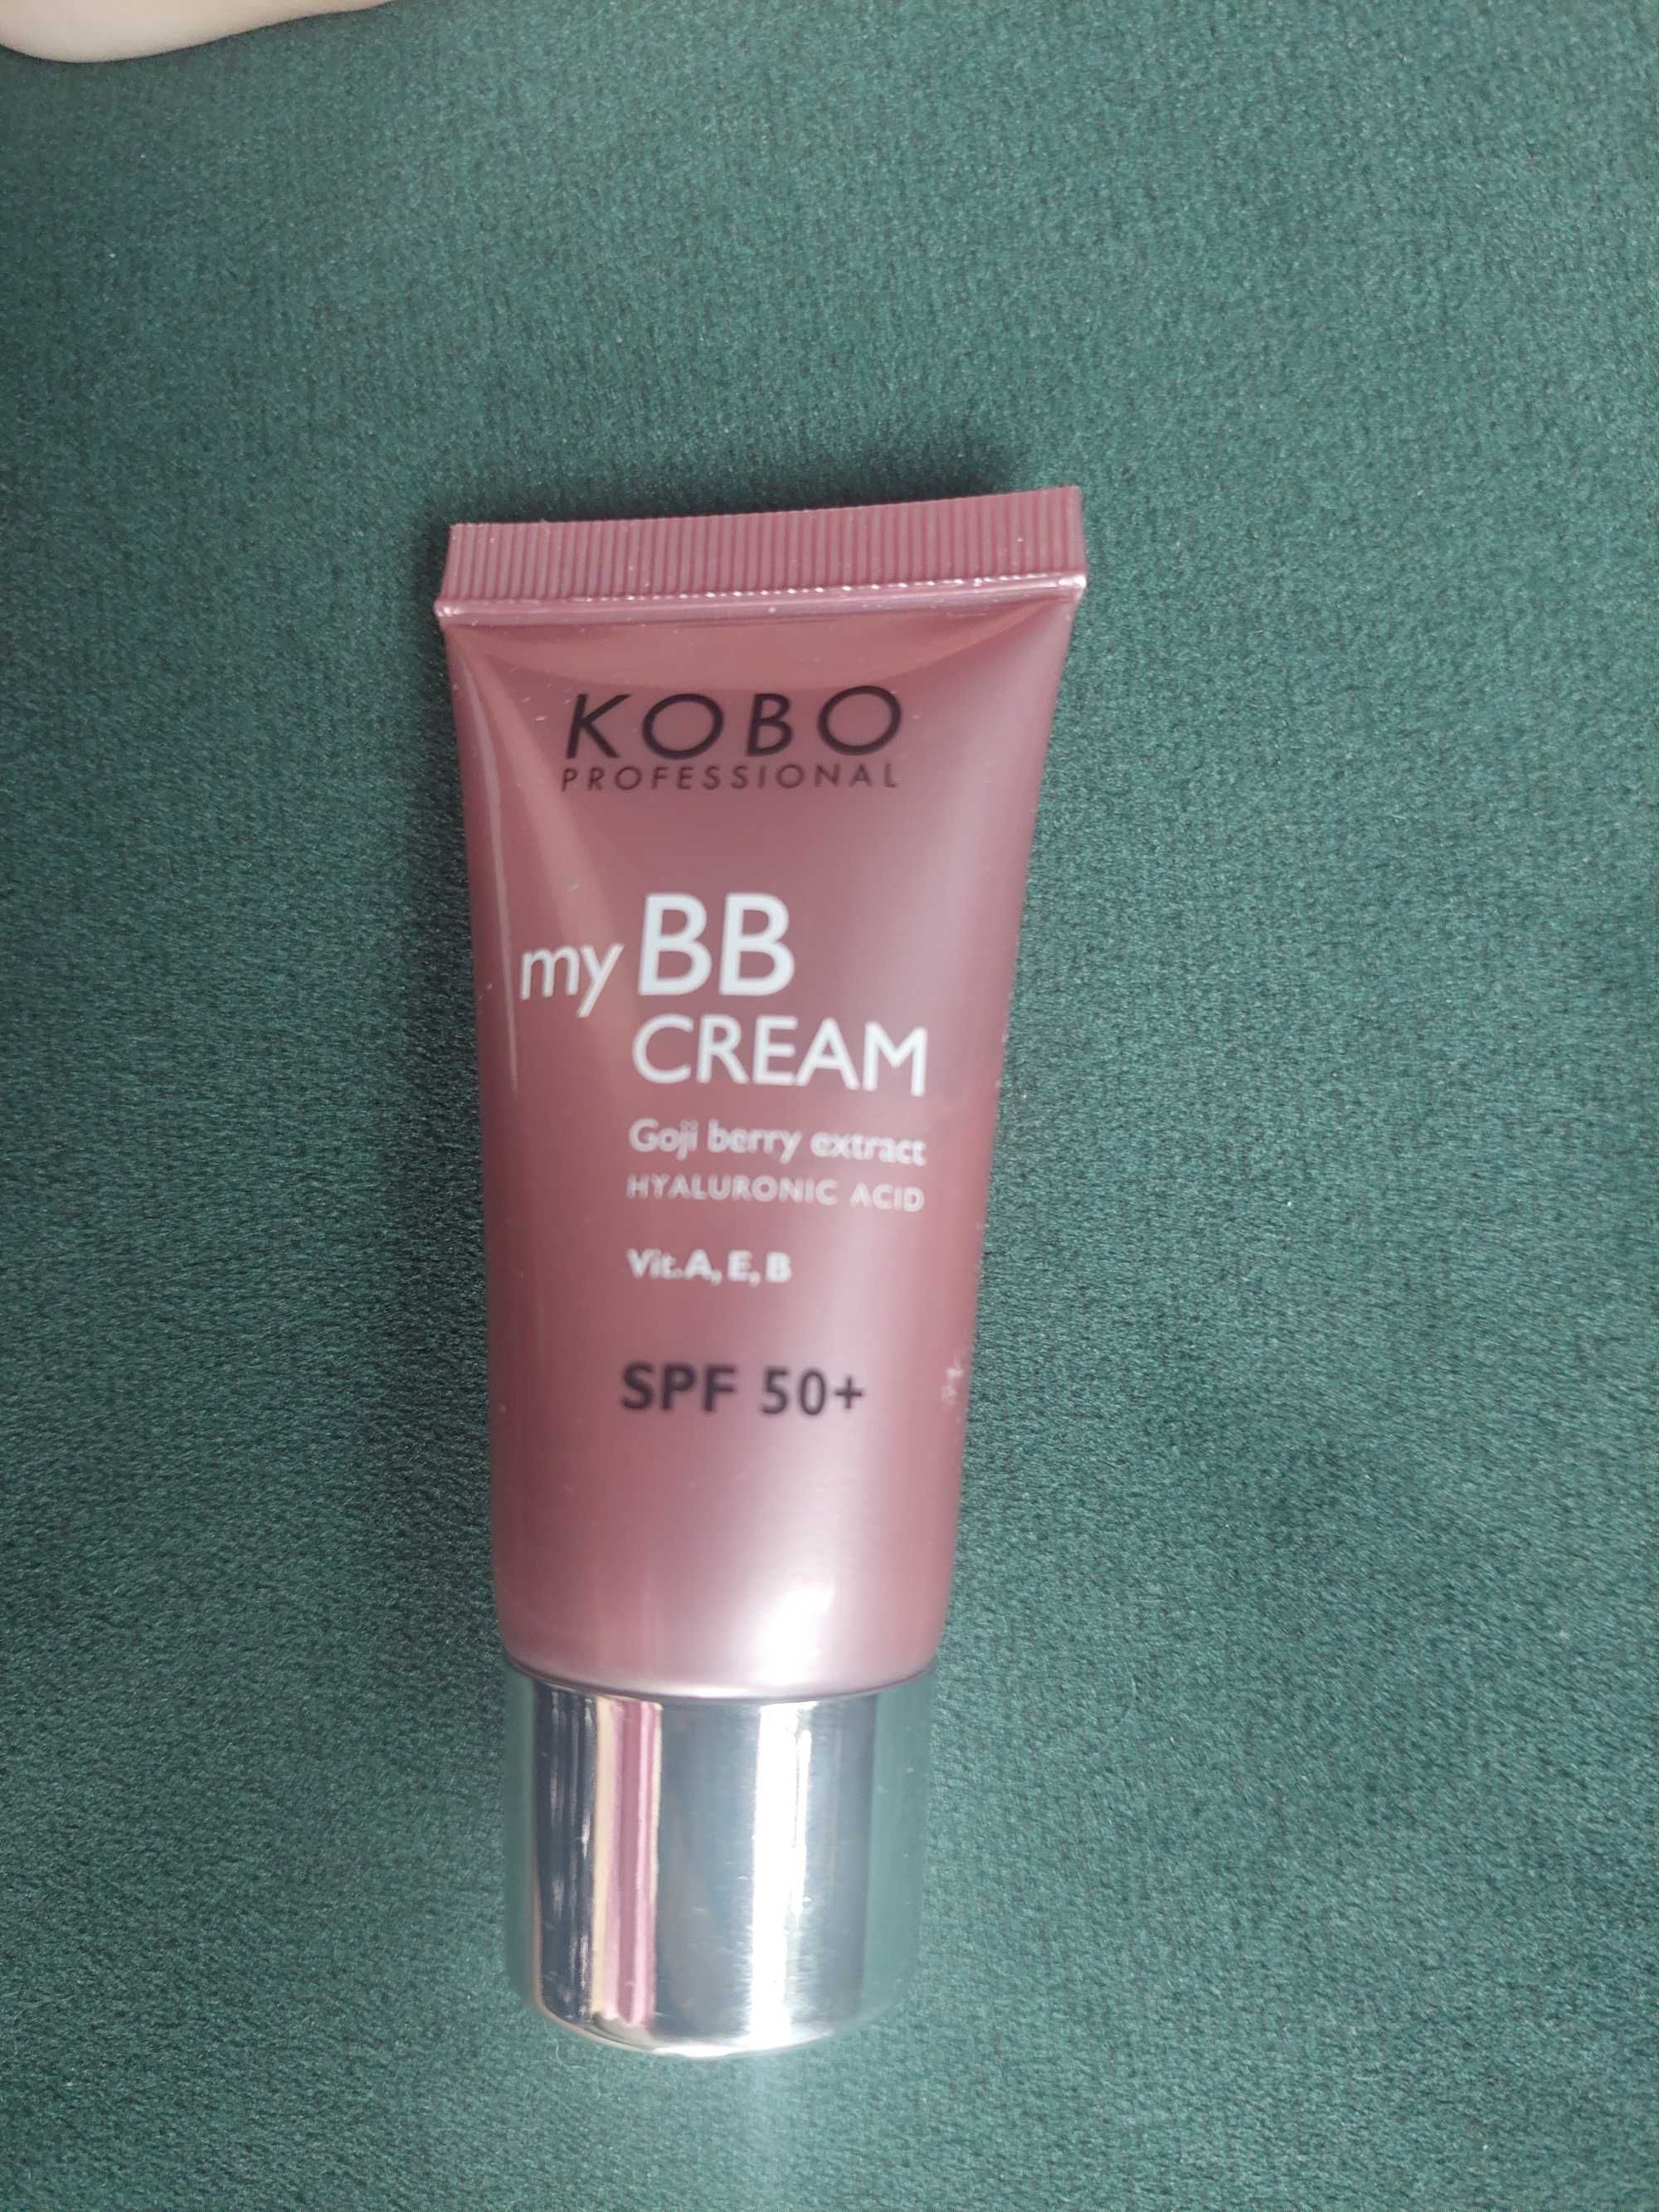 Kobo bb cream spf 50